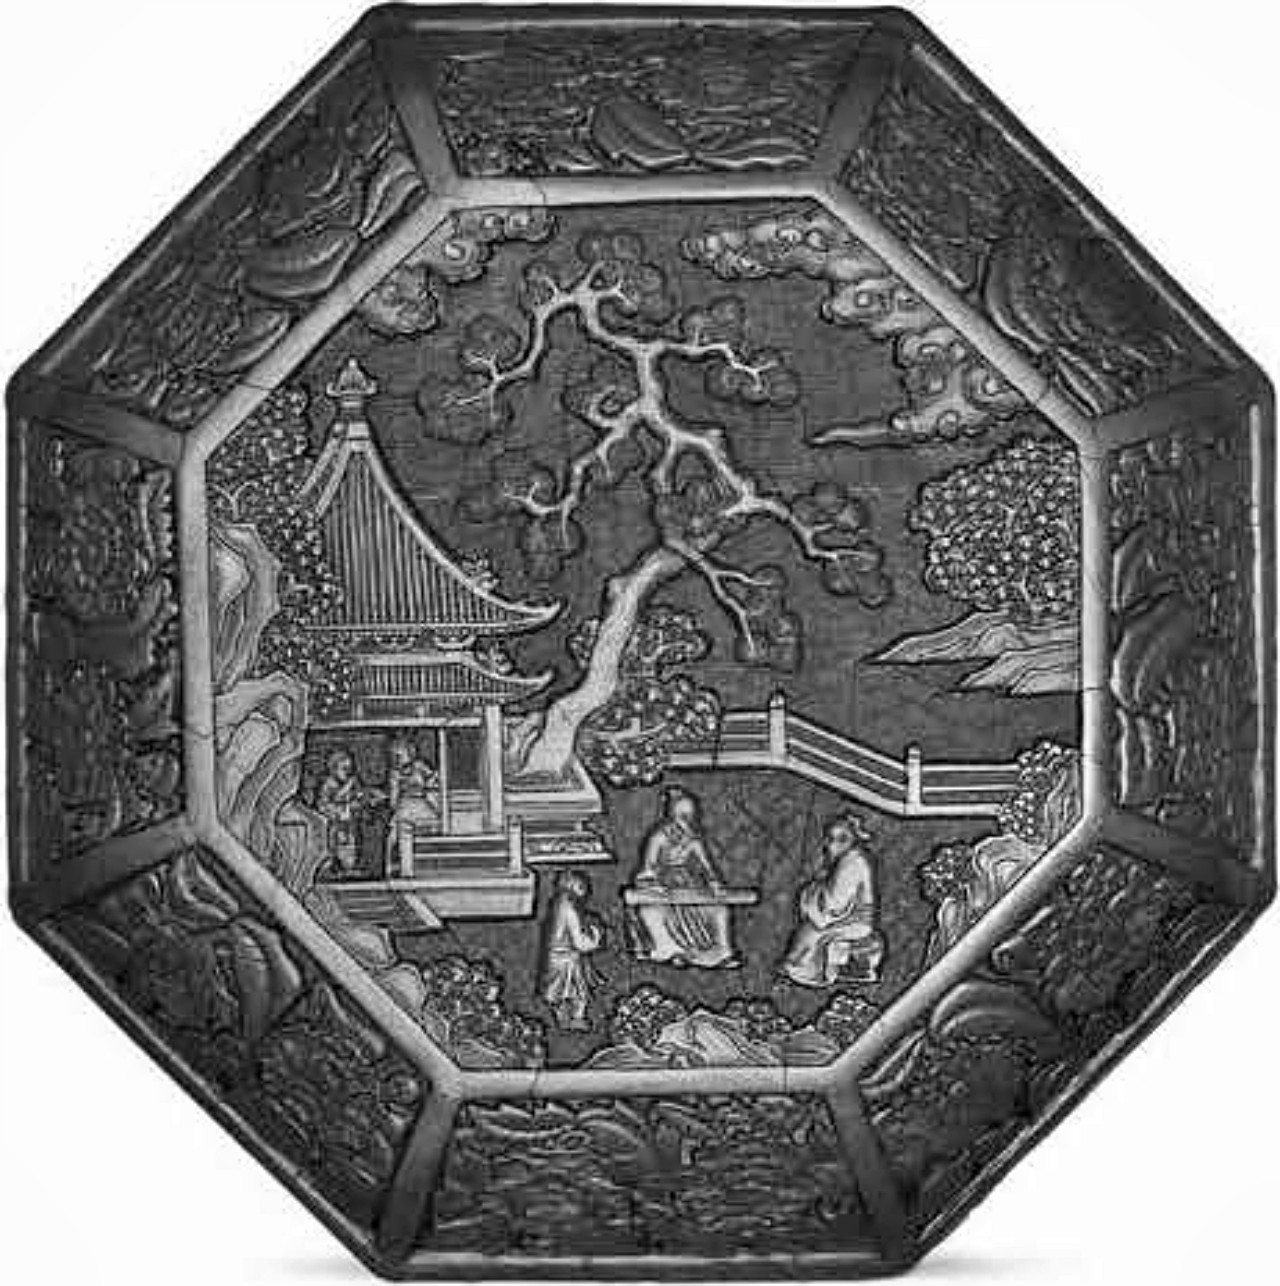 圖42  明, 15世紀初, 永樂款, 剔紅松下撫琴圖八方盒, 北京故宮博物院藏, 採自夏更起編,《故宮博物院藏文 物珍品大系·元明漆器》, 圖 24。